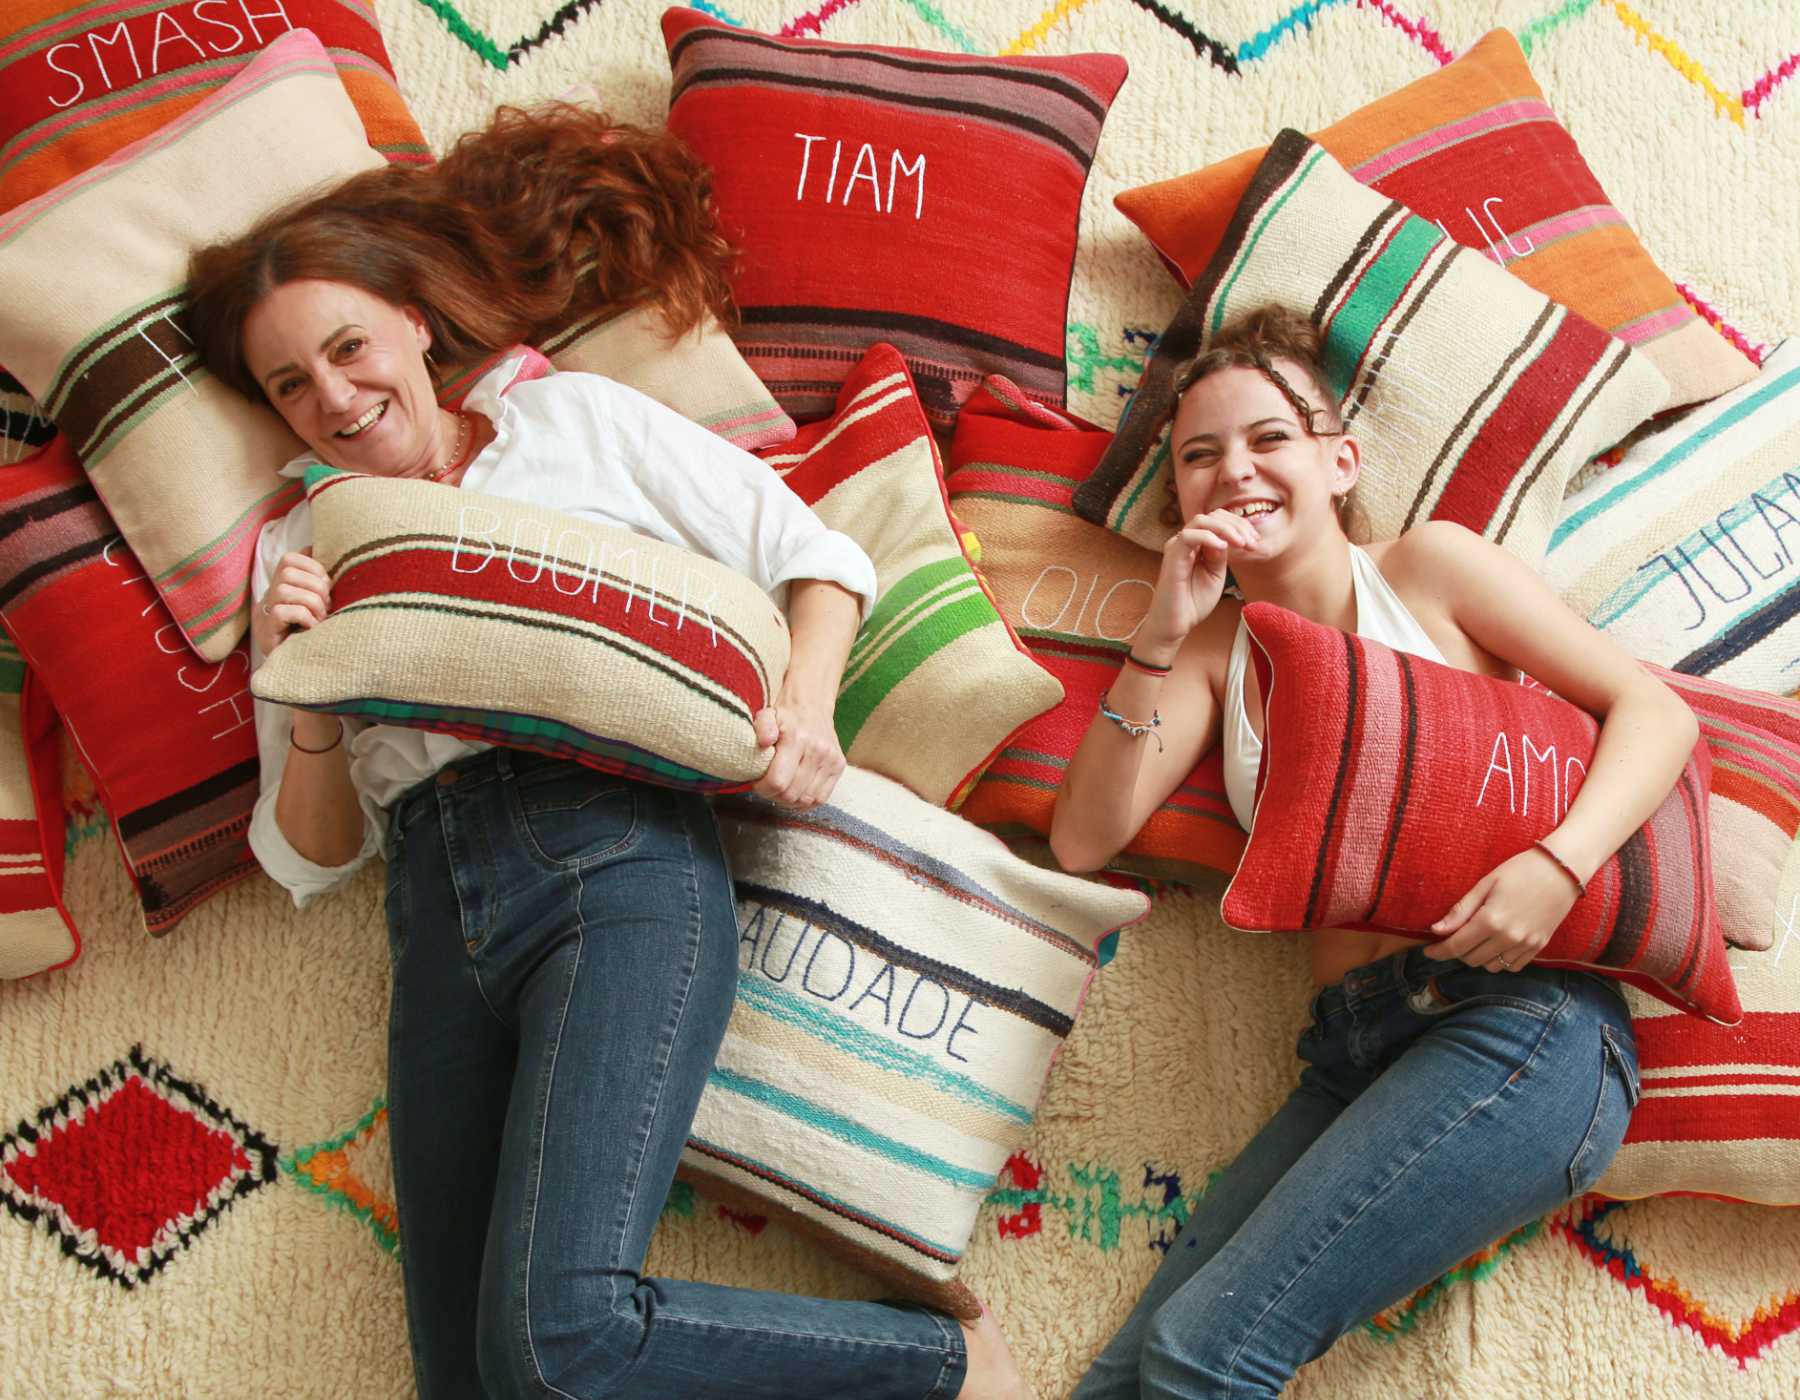 sabina maffei plozner e sua figlia costanza sorridono mentre tengono in mano dei cuscini della collezione tra le righe stando sdraiate su un tappeto ricoperto di cuscini